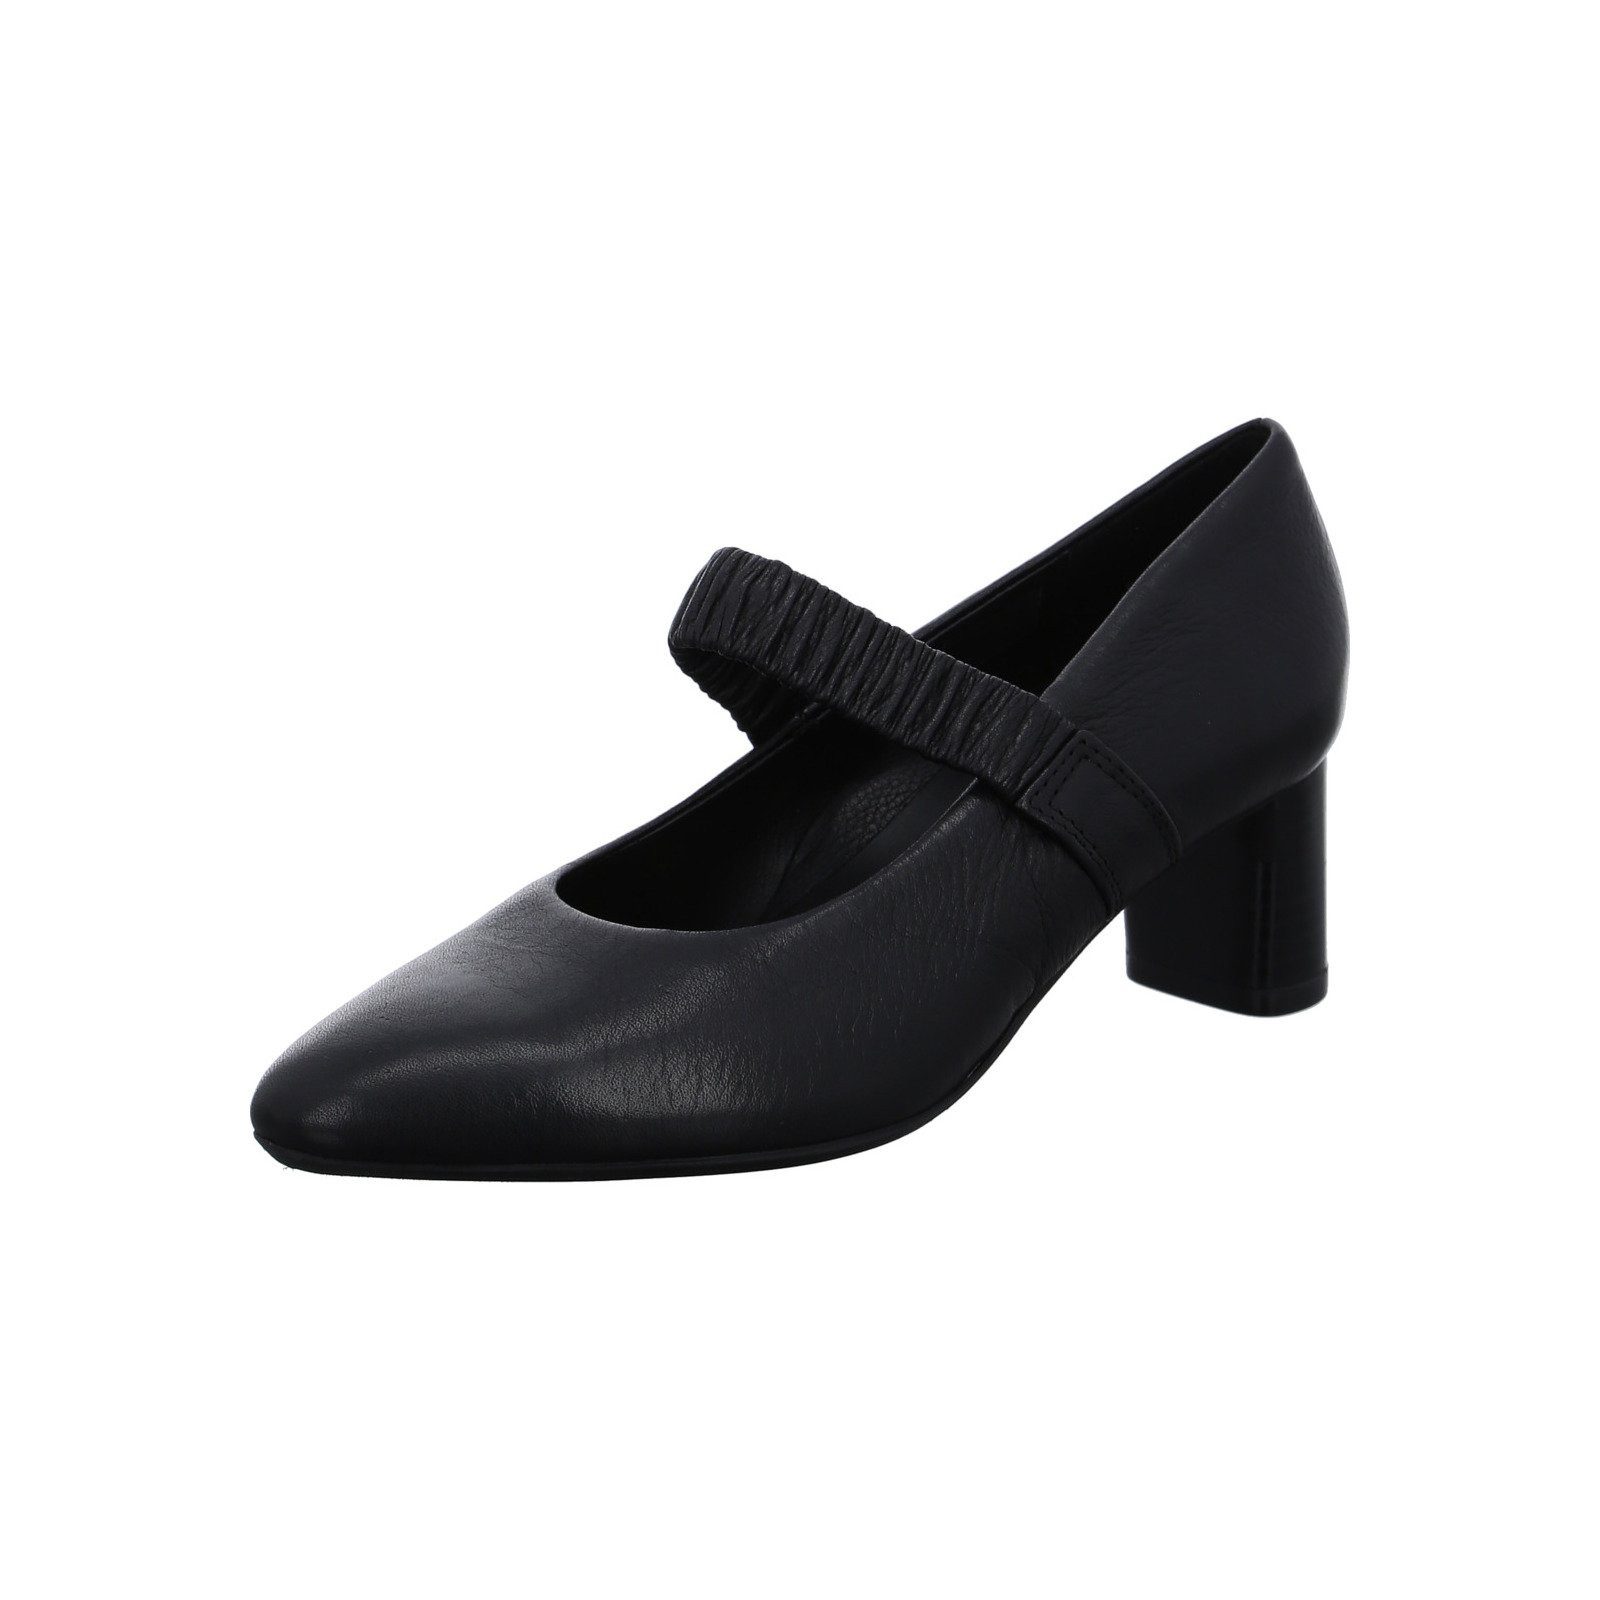 Ara London - Damen Schuhe Pumps schwarz